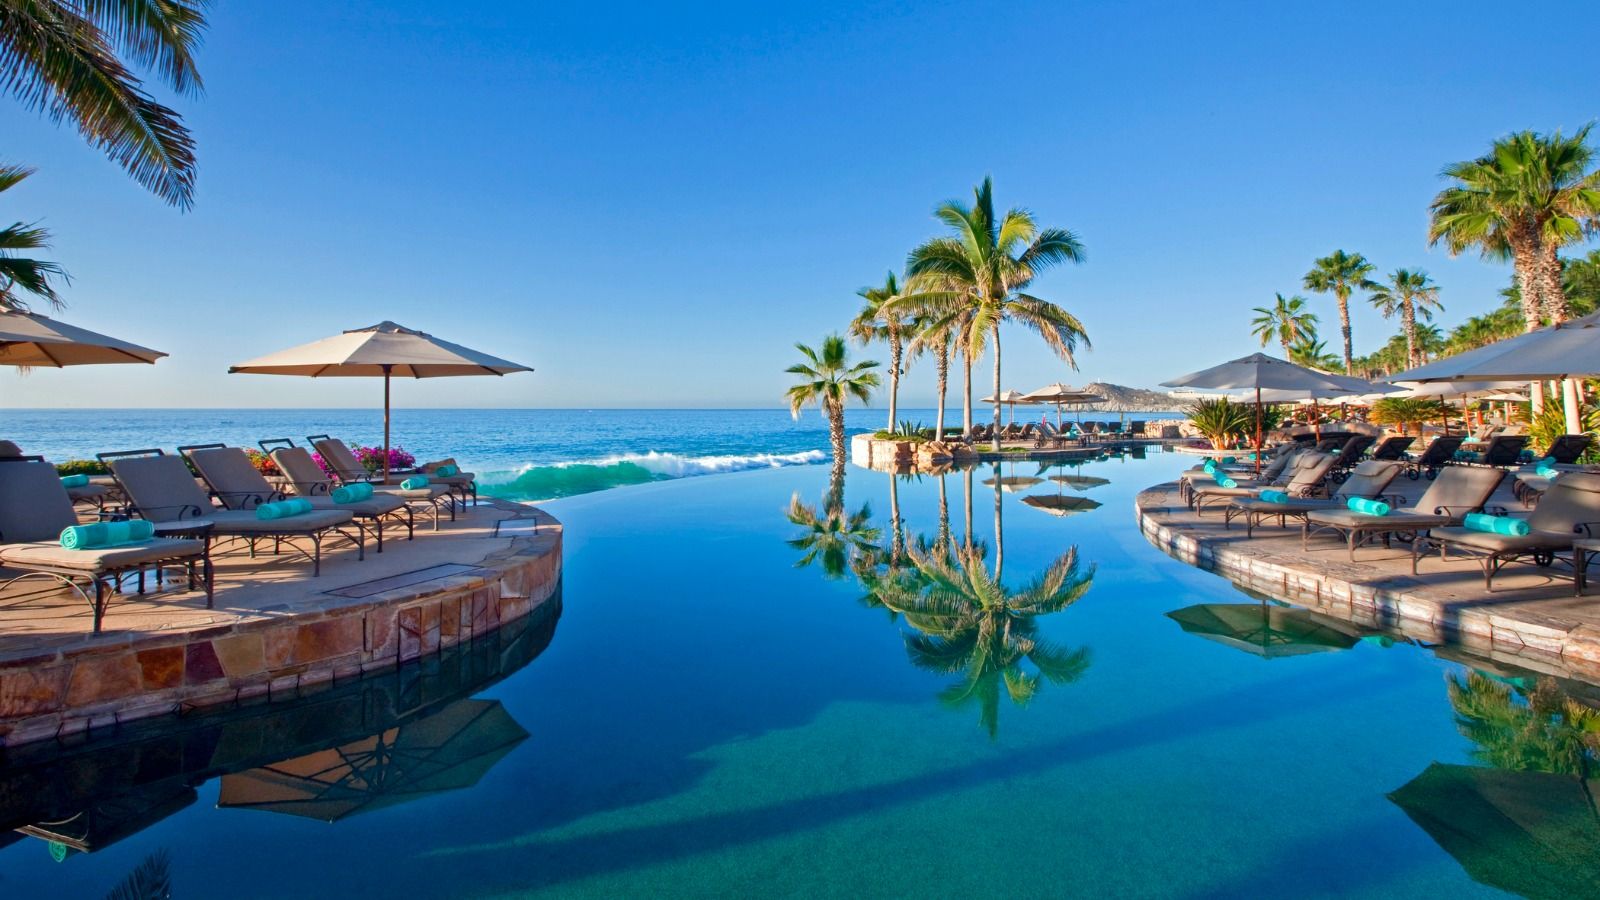 Infinity Pool at the Hacienda del Mar Los Cabos Resort - Villas - Golf